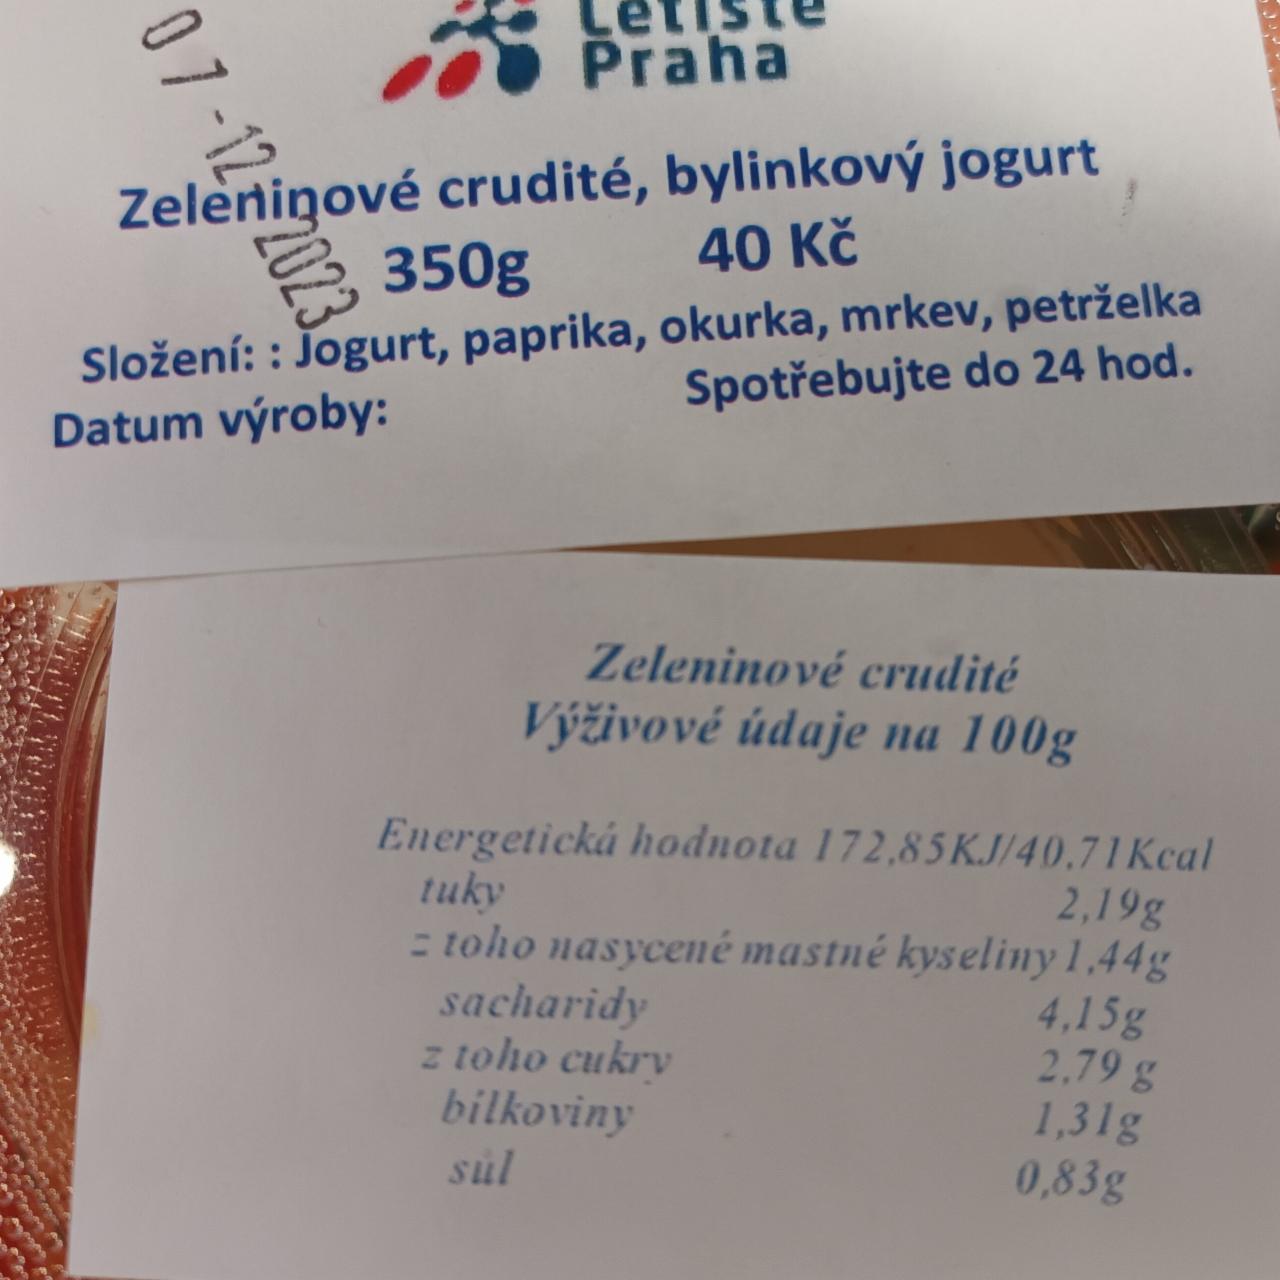 Fotografie - Zeleninové crudité, bylinkový jogurt Letiště Praha